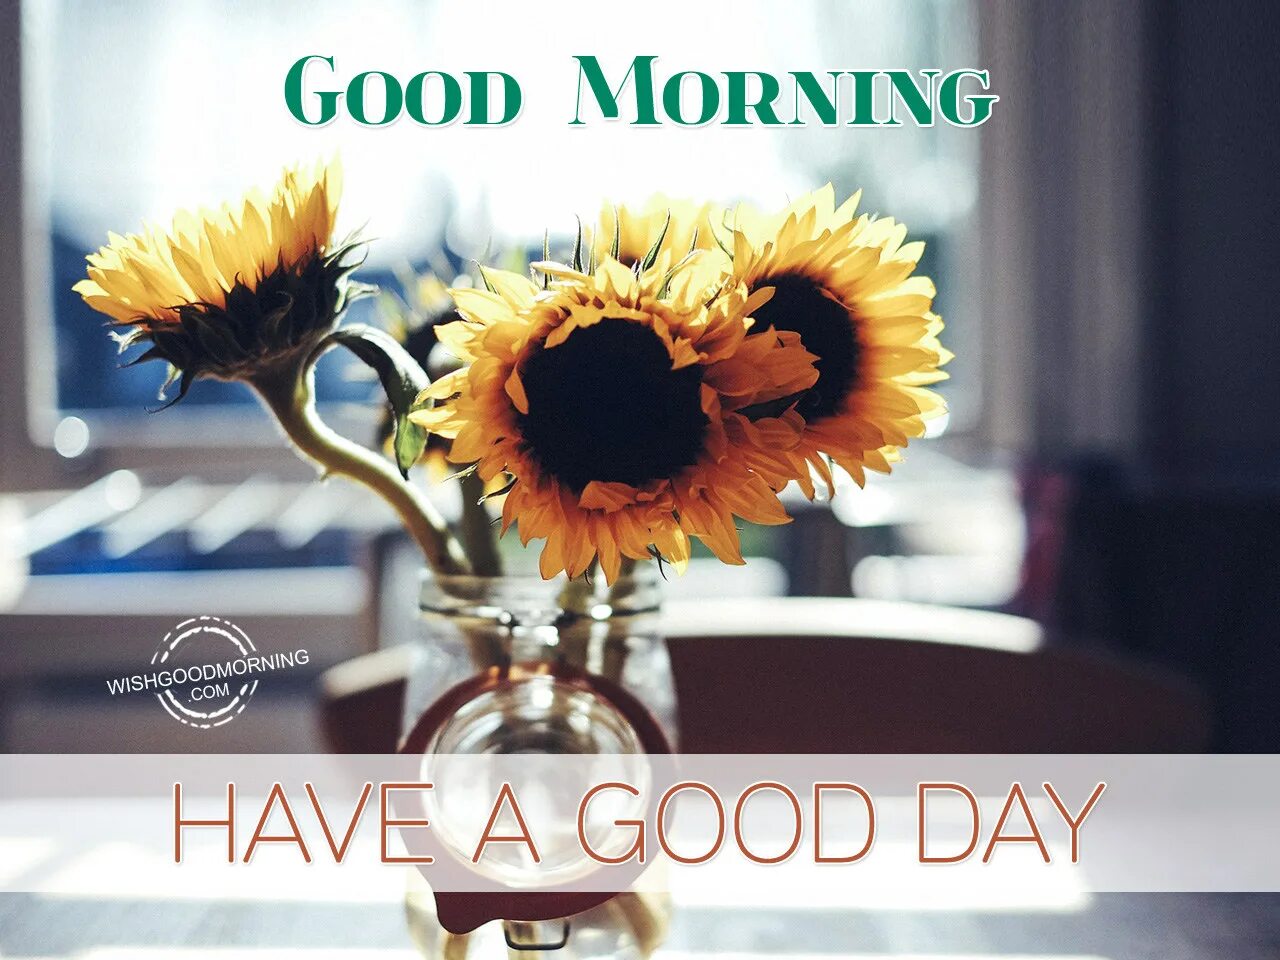 Включи good morning. Good Day картинки. Good morning have a great Day картинки. Good morning have a good Day. Have a good Day картинки.